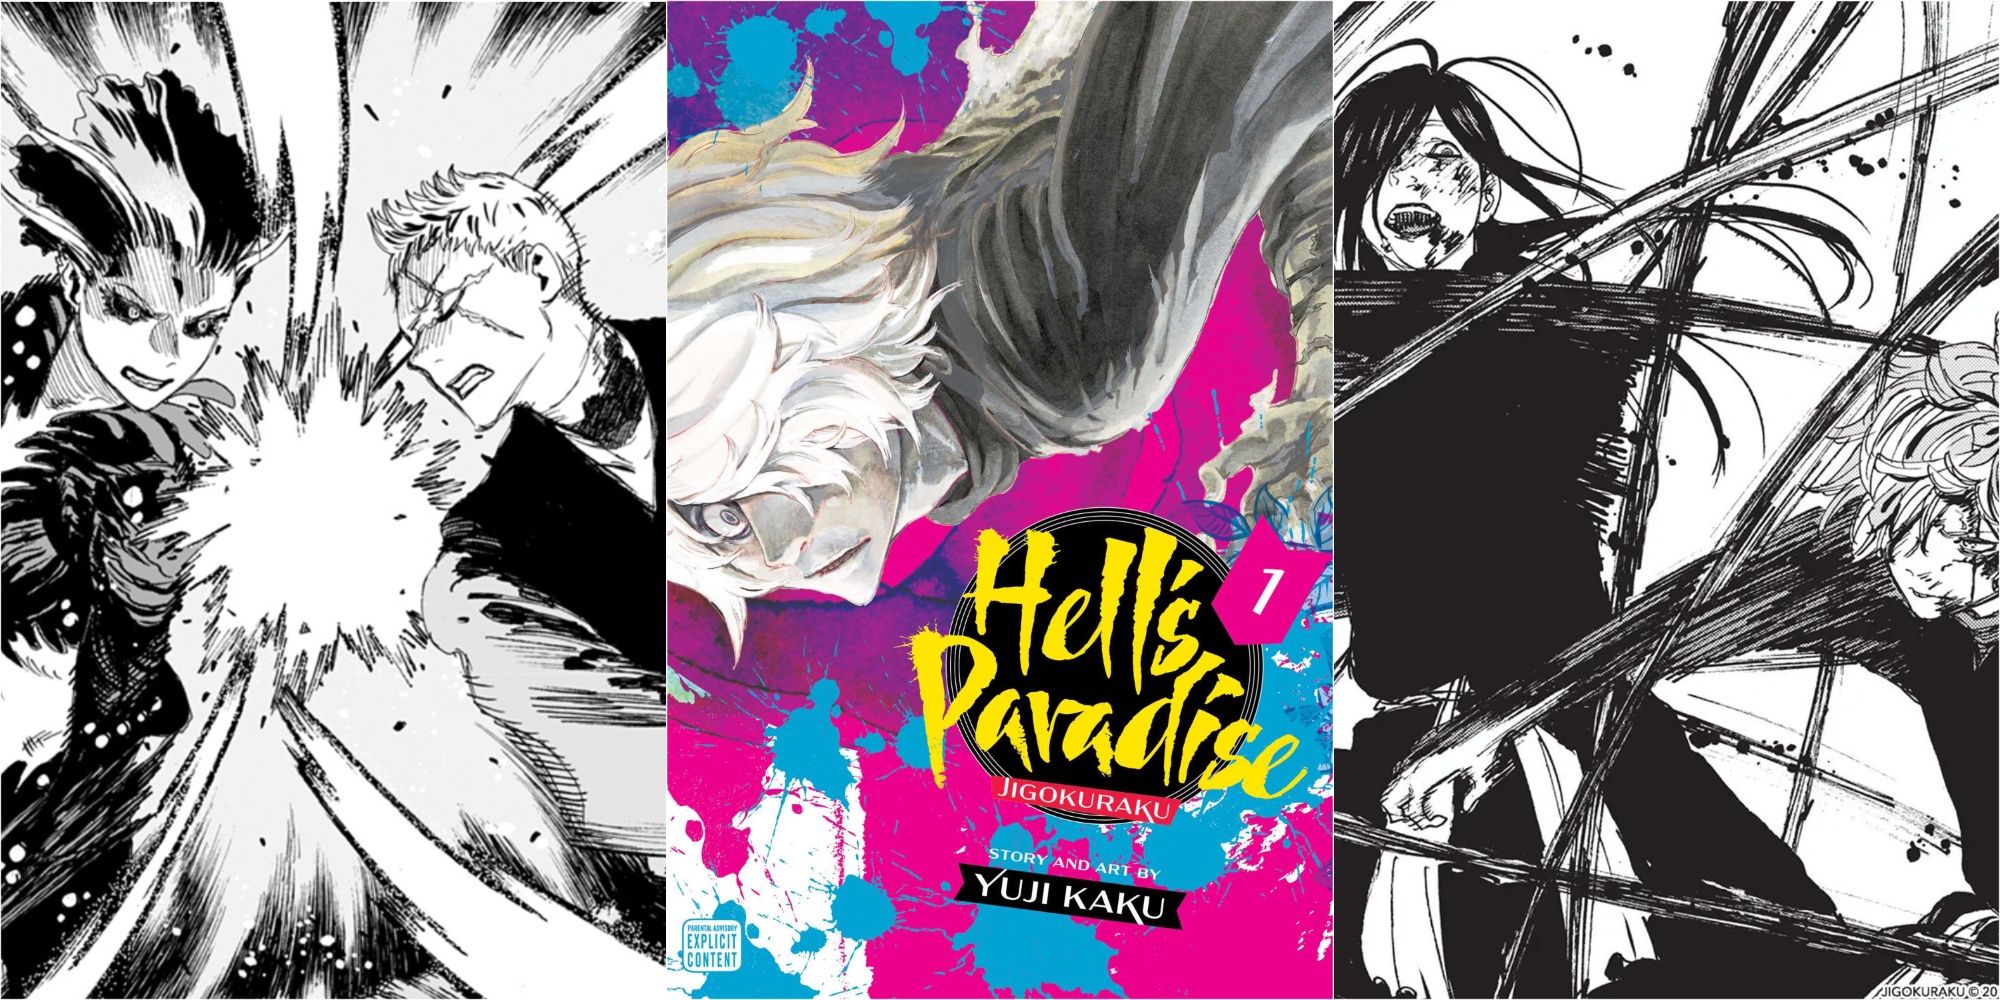 10th 'Hell's Paradise: Jigokuraku' TV Anime Episode Previewed